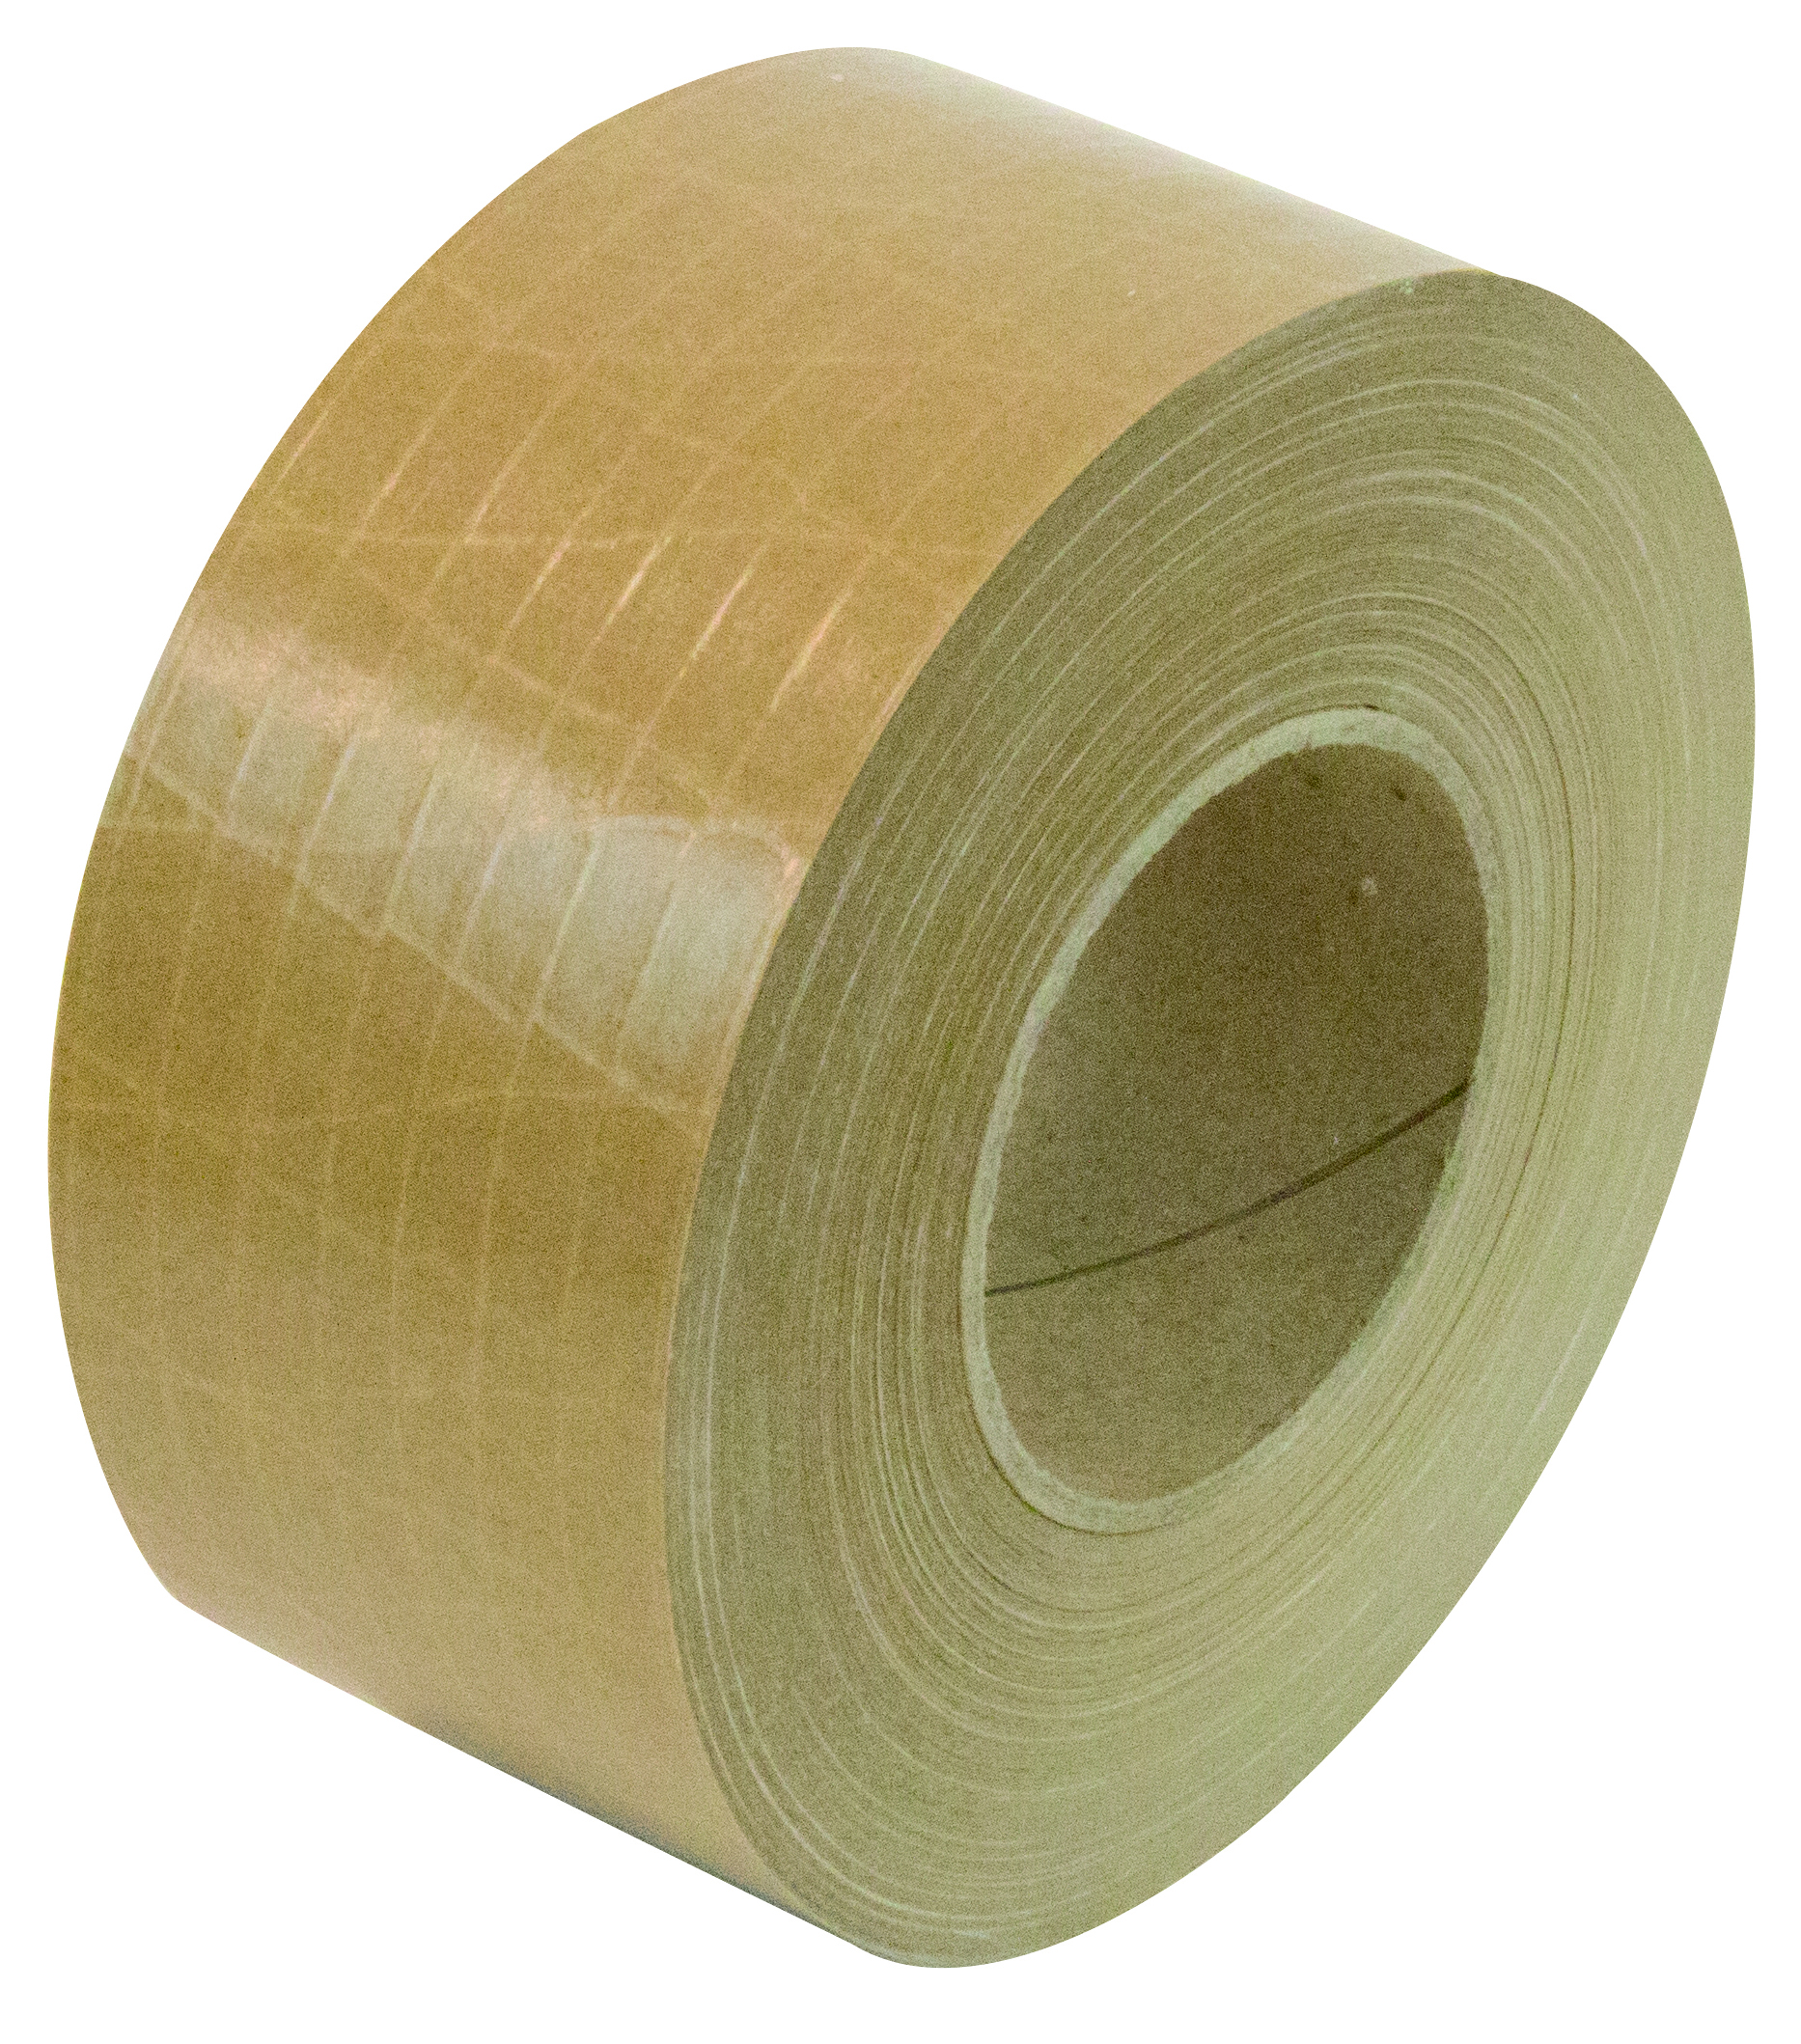 Papier-Naßklebebänder Diagonal verstärkt Das stärkste und professionellste Verschlussmaterial, das zugleich auch nachhaltig ist. Für sehr schwere Pakete bis über 50 kg.